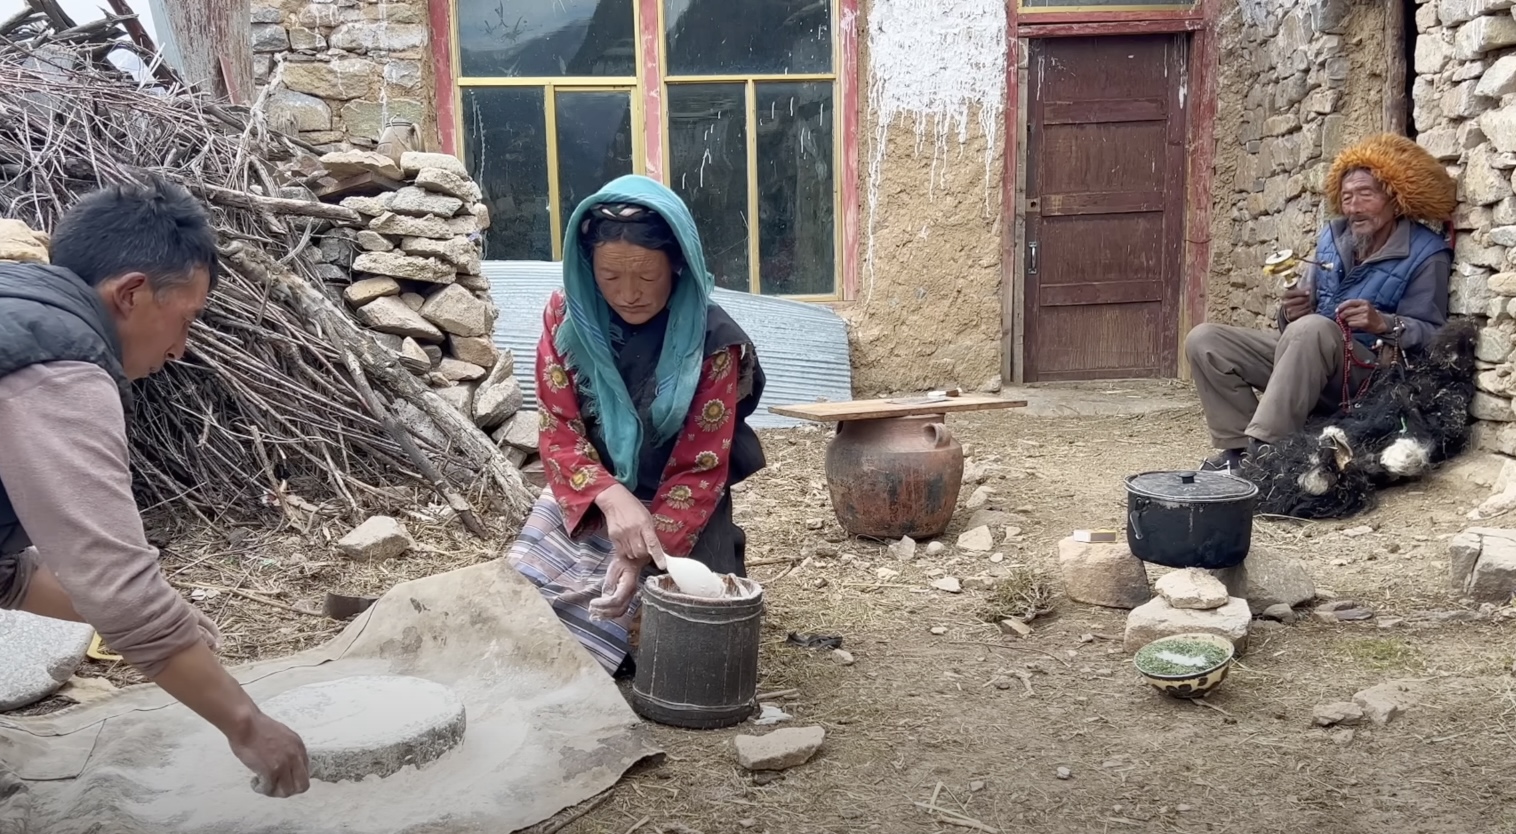 Rural life in Tibet